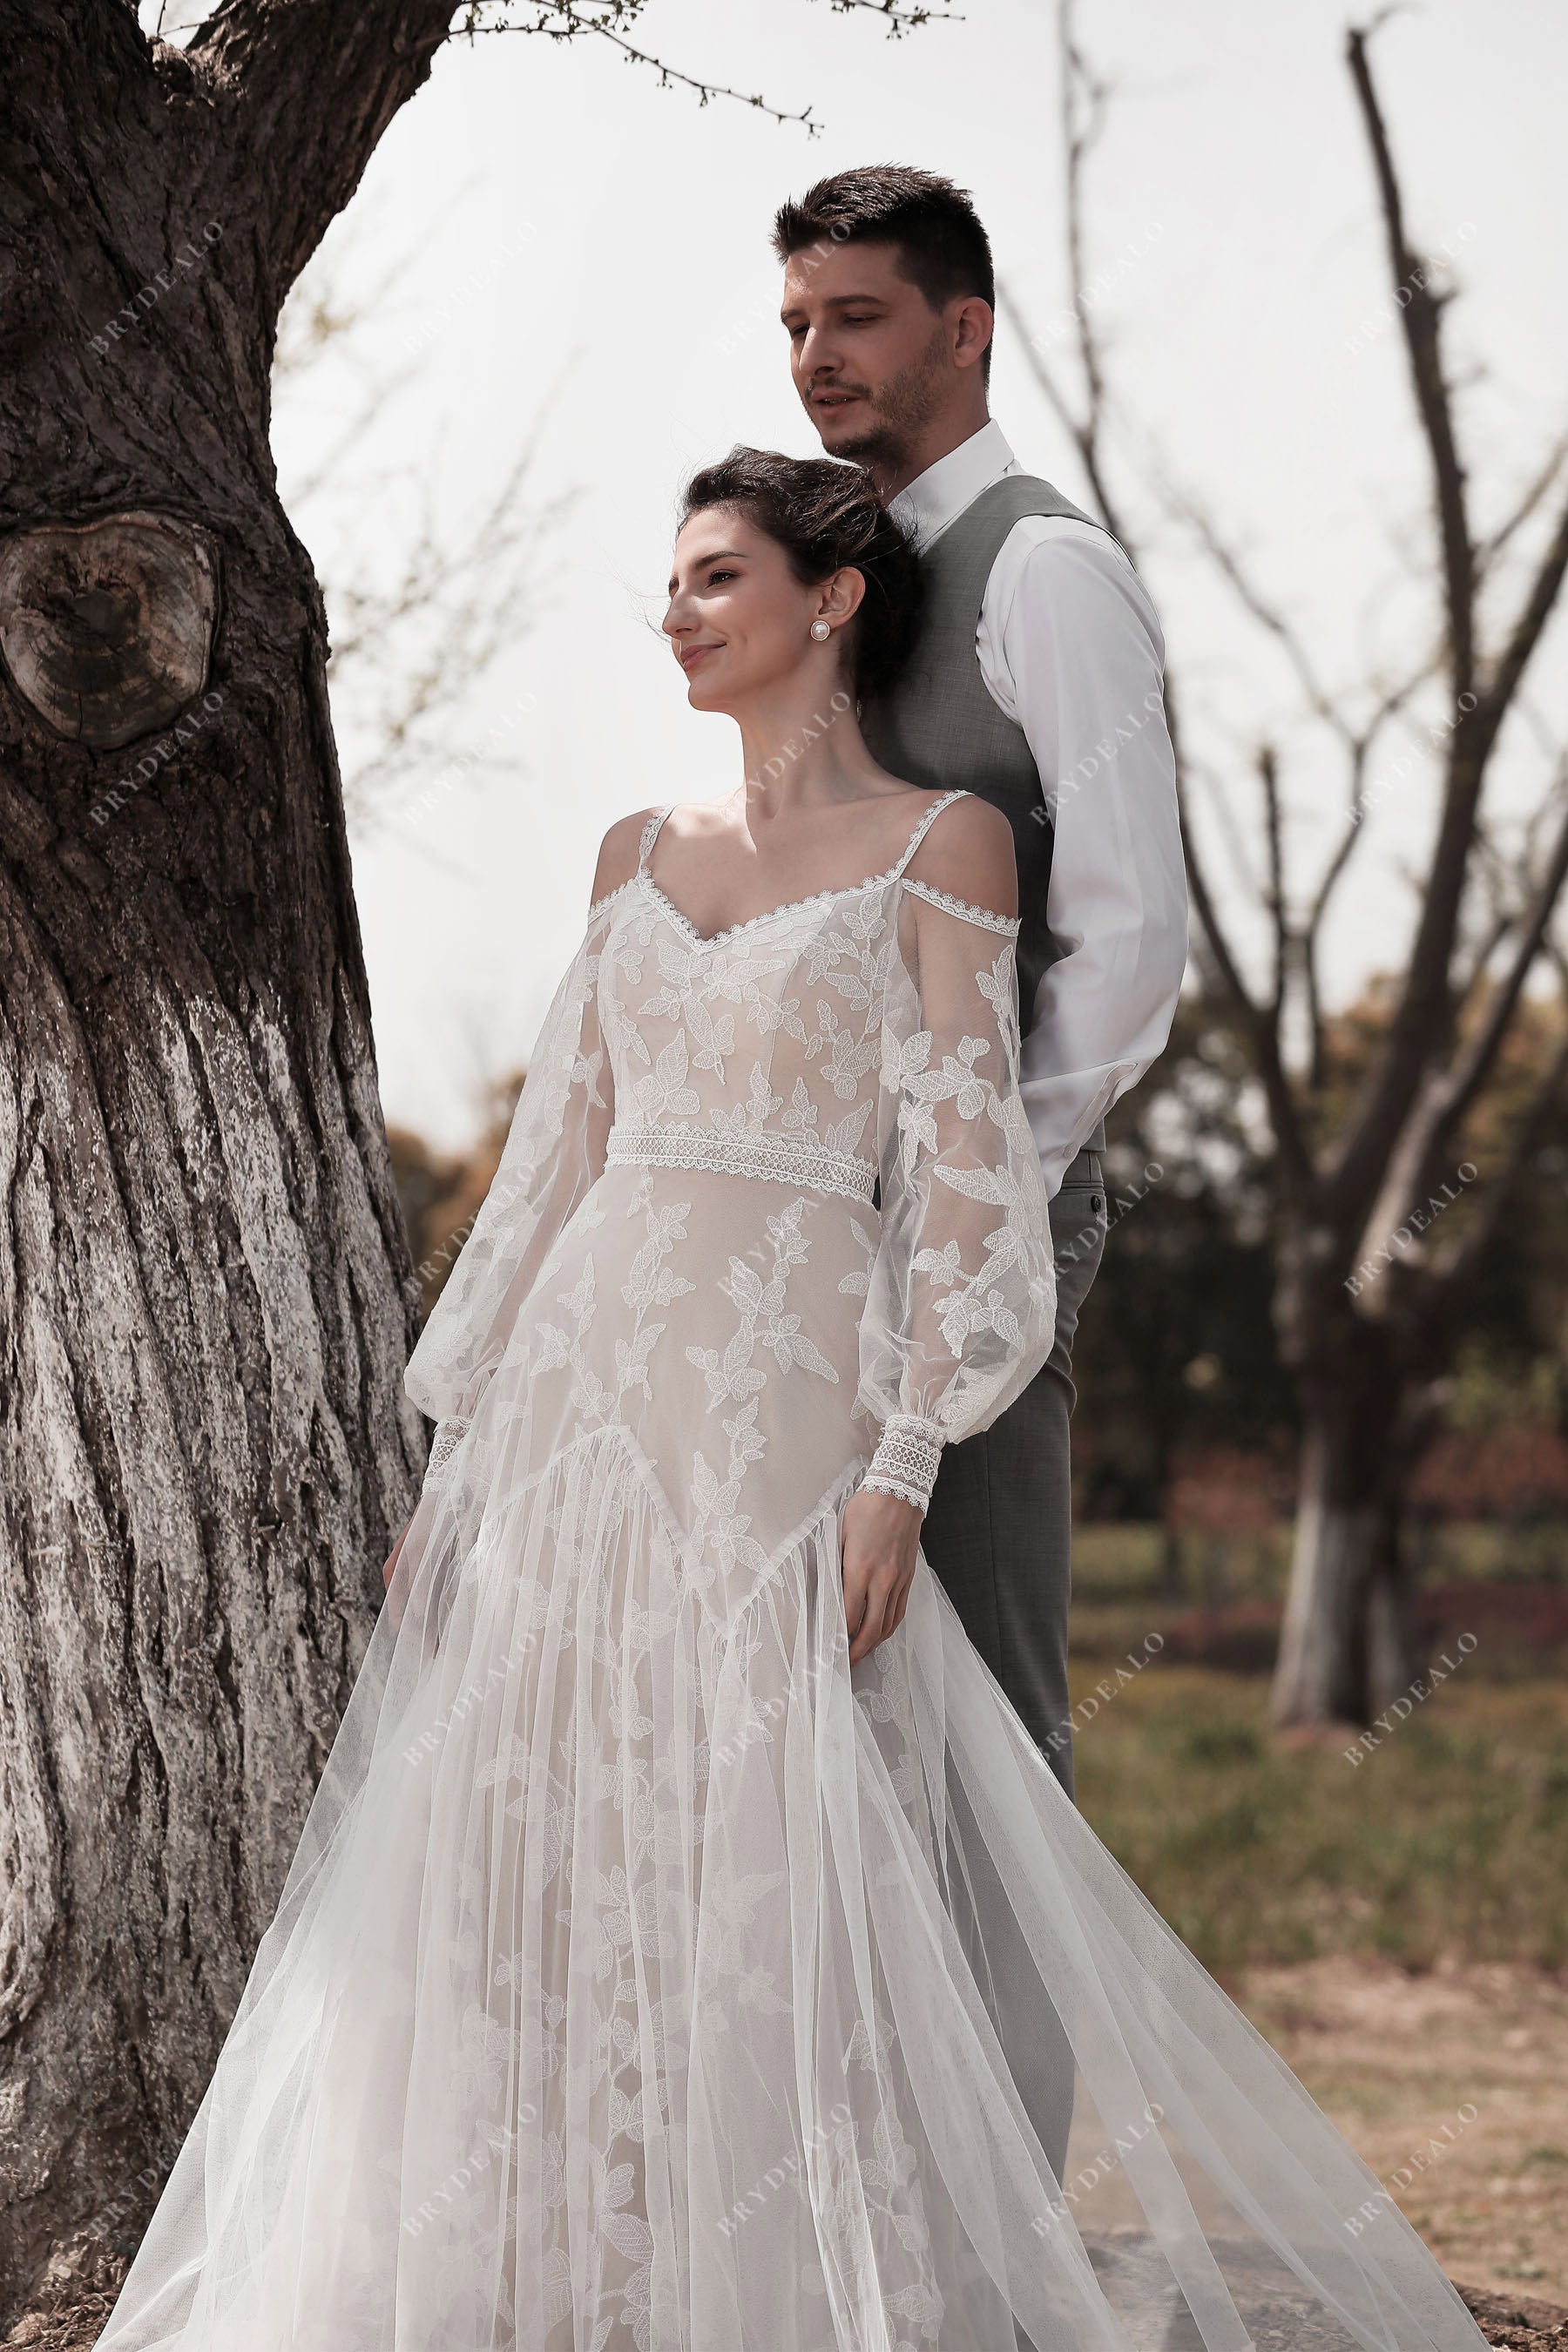 DETACHABLE WEDDING DRESS Straps, off Shoulder Straps, Detachable Sleeves,  Wedding Dress Sleeves, Wedding Dresses,bridal Straps,dress Sleeves 